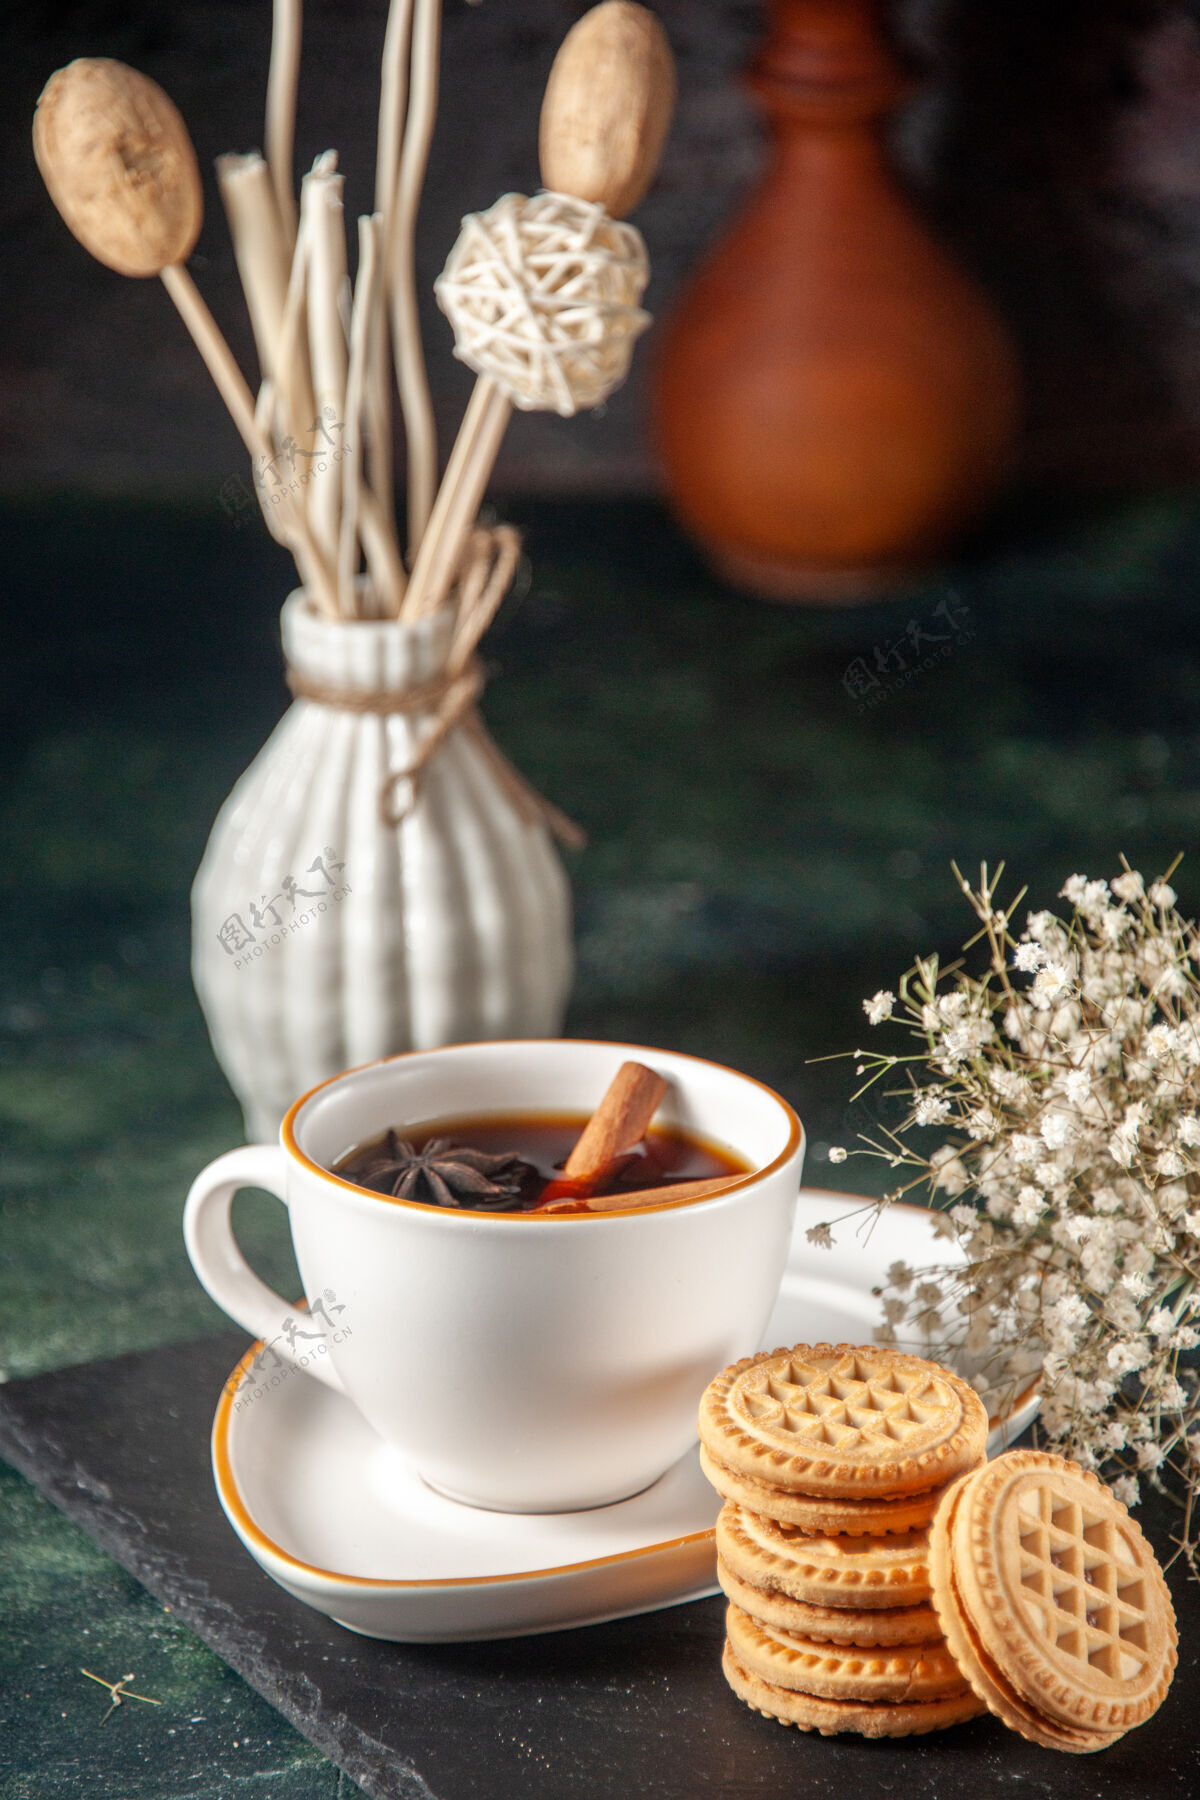 咖啡因眼前一杯茶 甜甜饼干放在黑暗的表面面包饮料仪式杯甜甜蛋糕彩色照片糖早晨早餐颜色茶杯